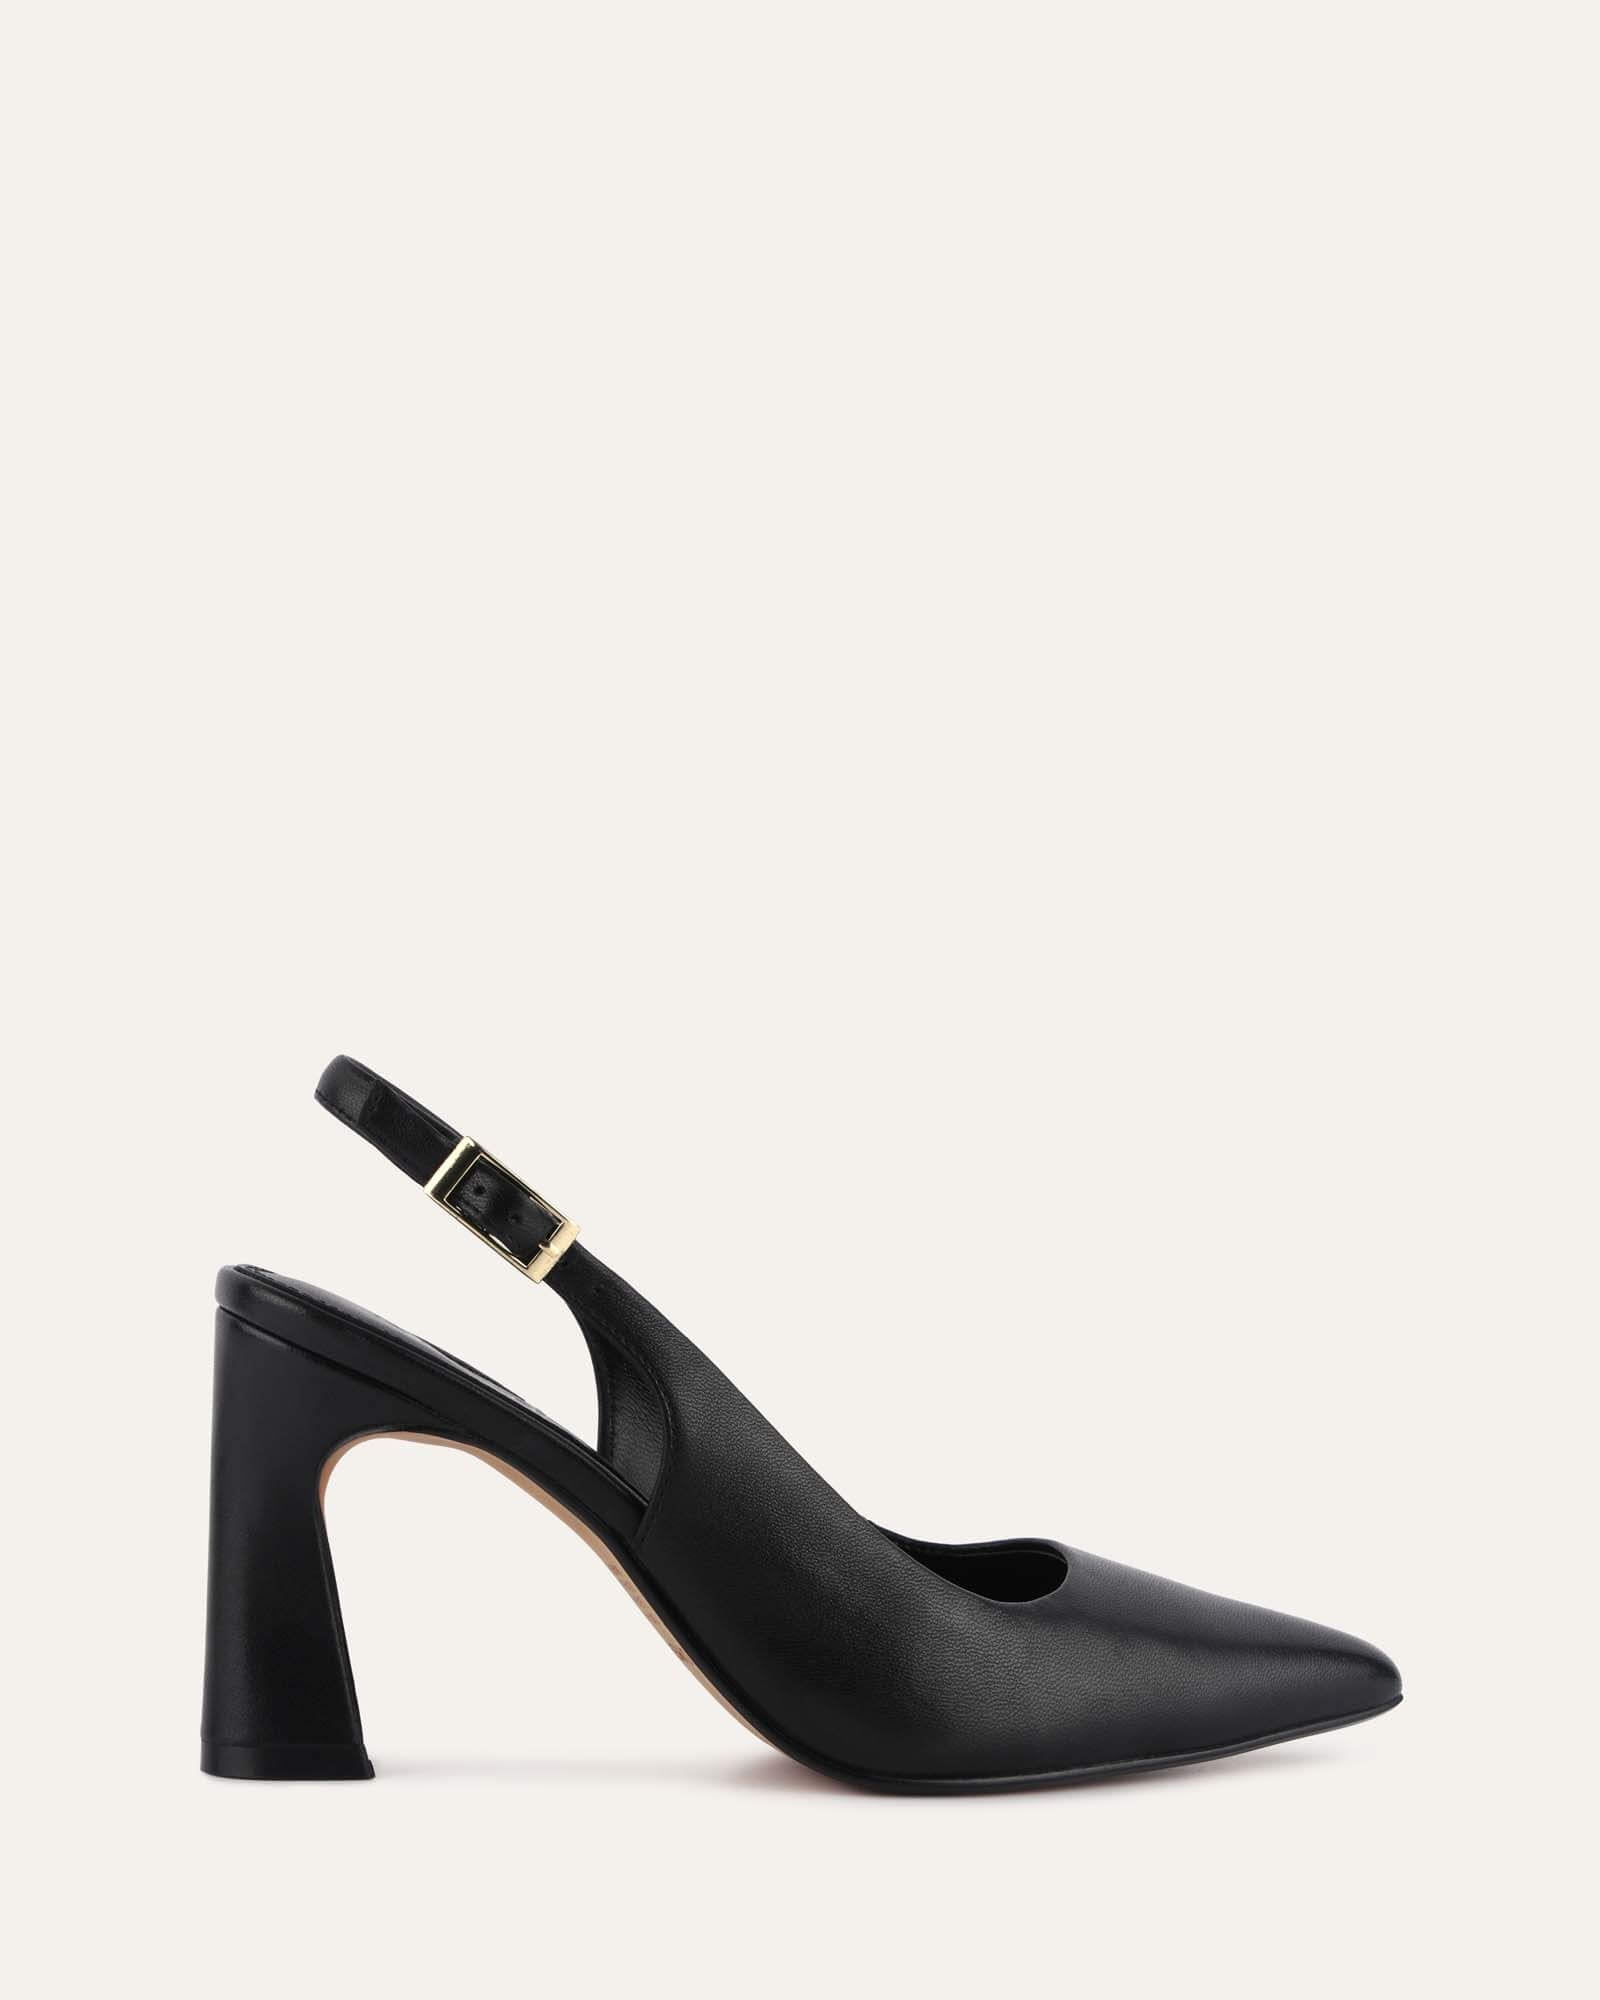 high heels new design korean pure| Alibaba.com